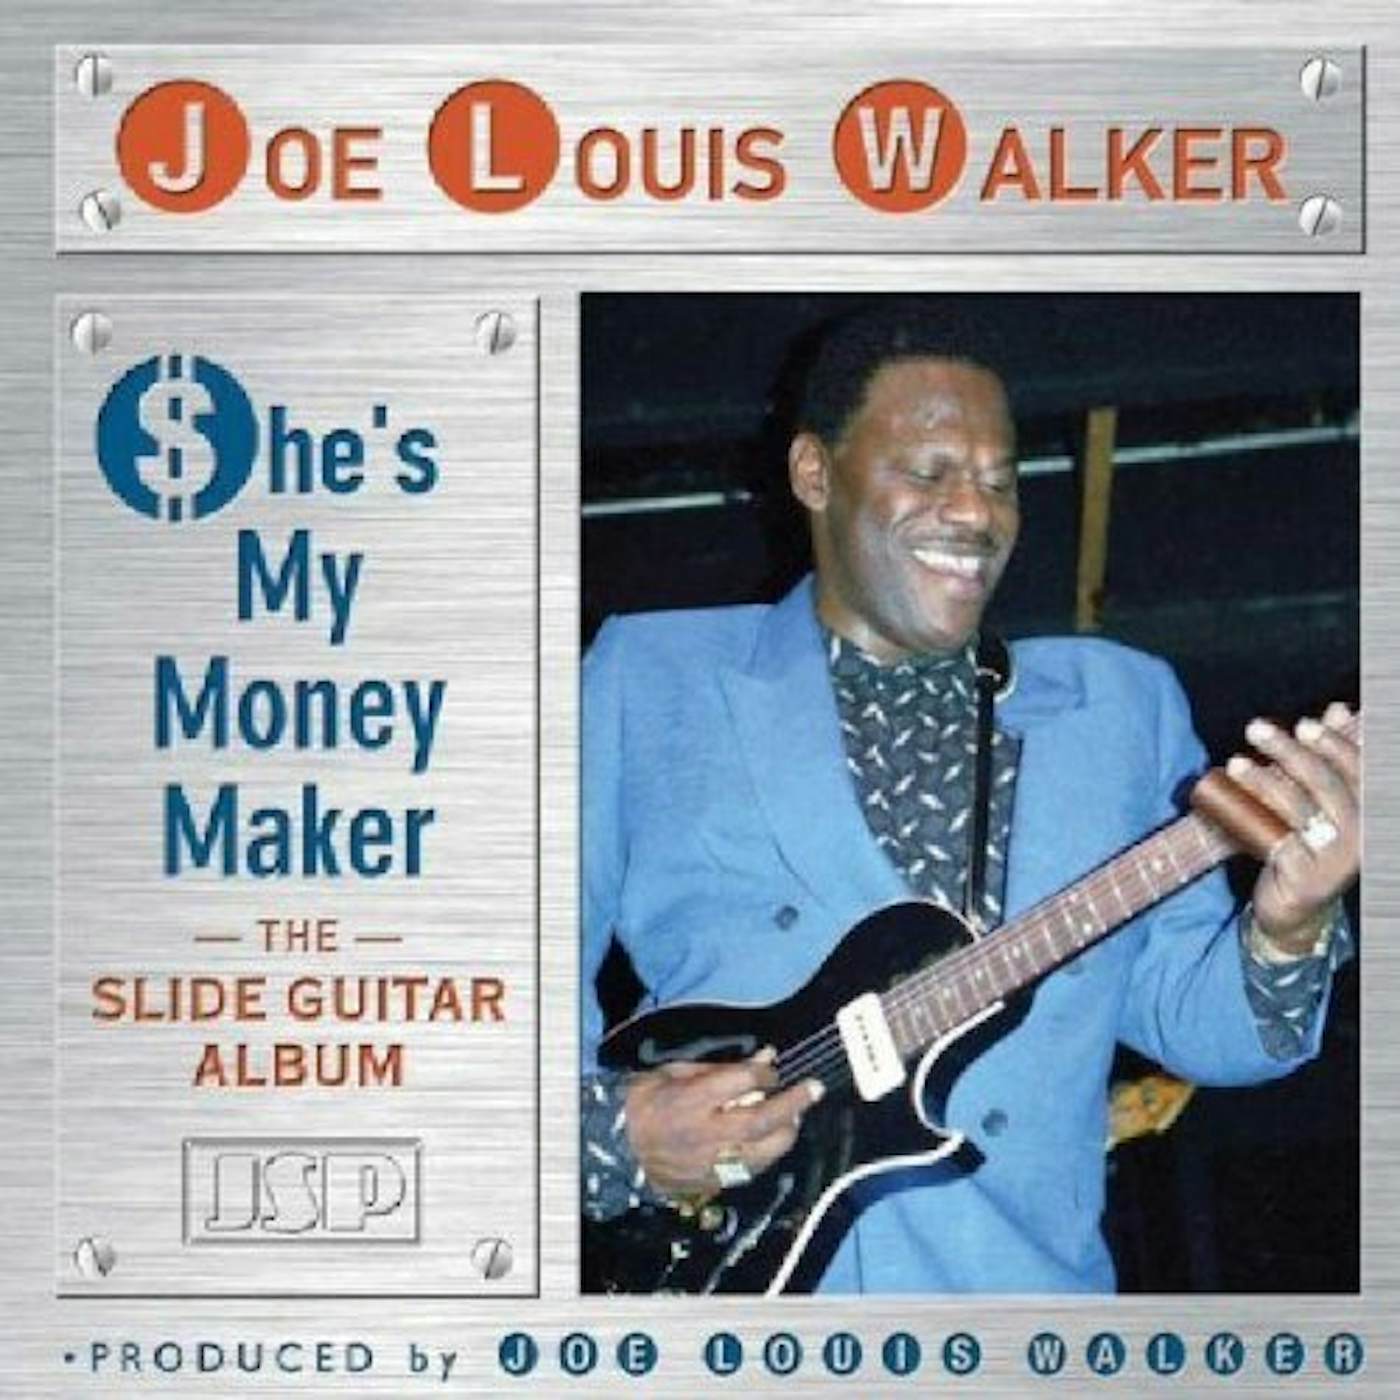 Joe Louis Walker SHE'S MY MONEY MAKER CD